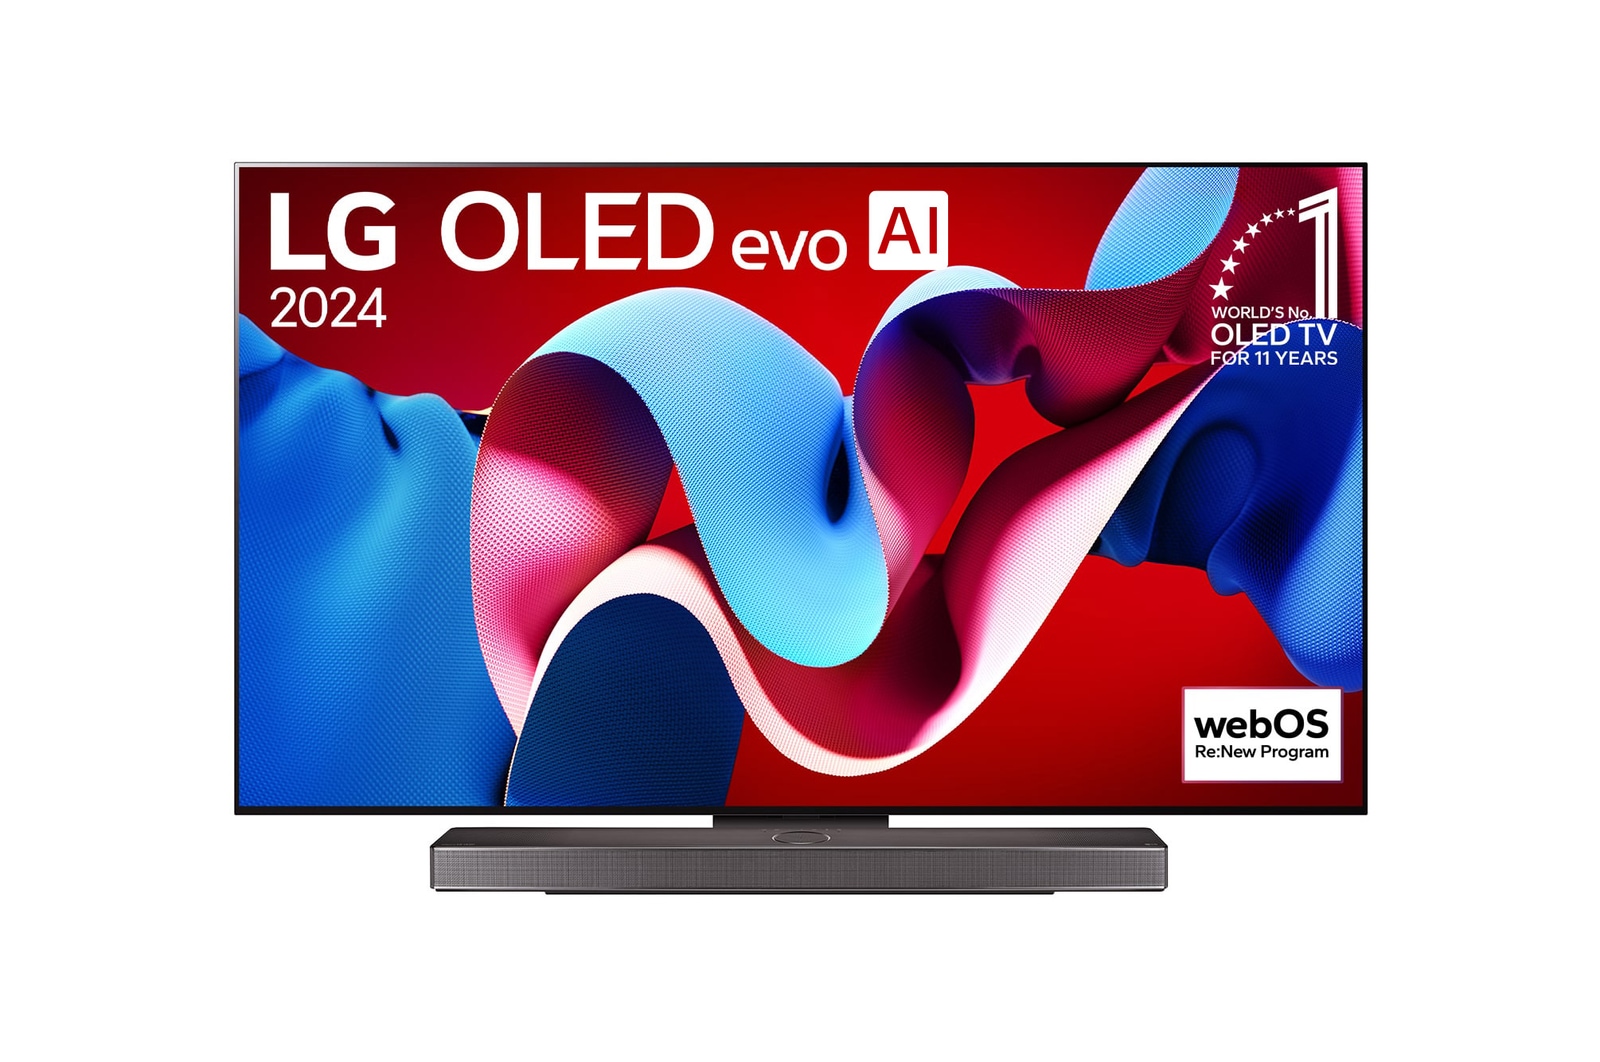 Přední pohled s LG OLED evo TV, OLED C4, 11-leté světové číslo 1 OLED Emblem logo a webOS Re:New Program logo na obrazovce, stejně jako soundbar níže